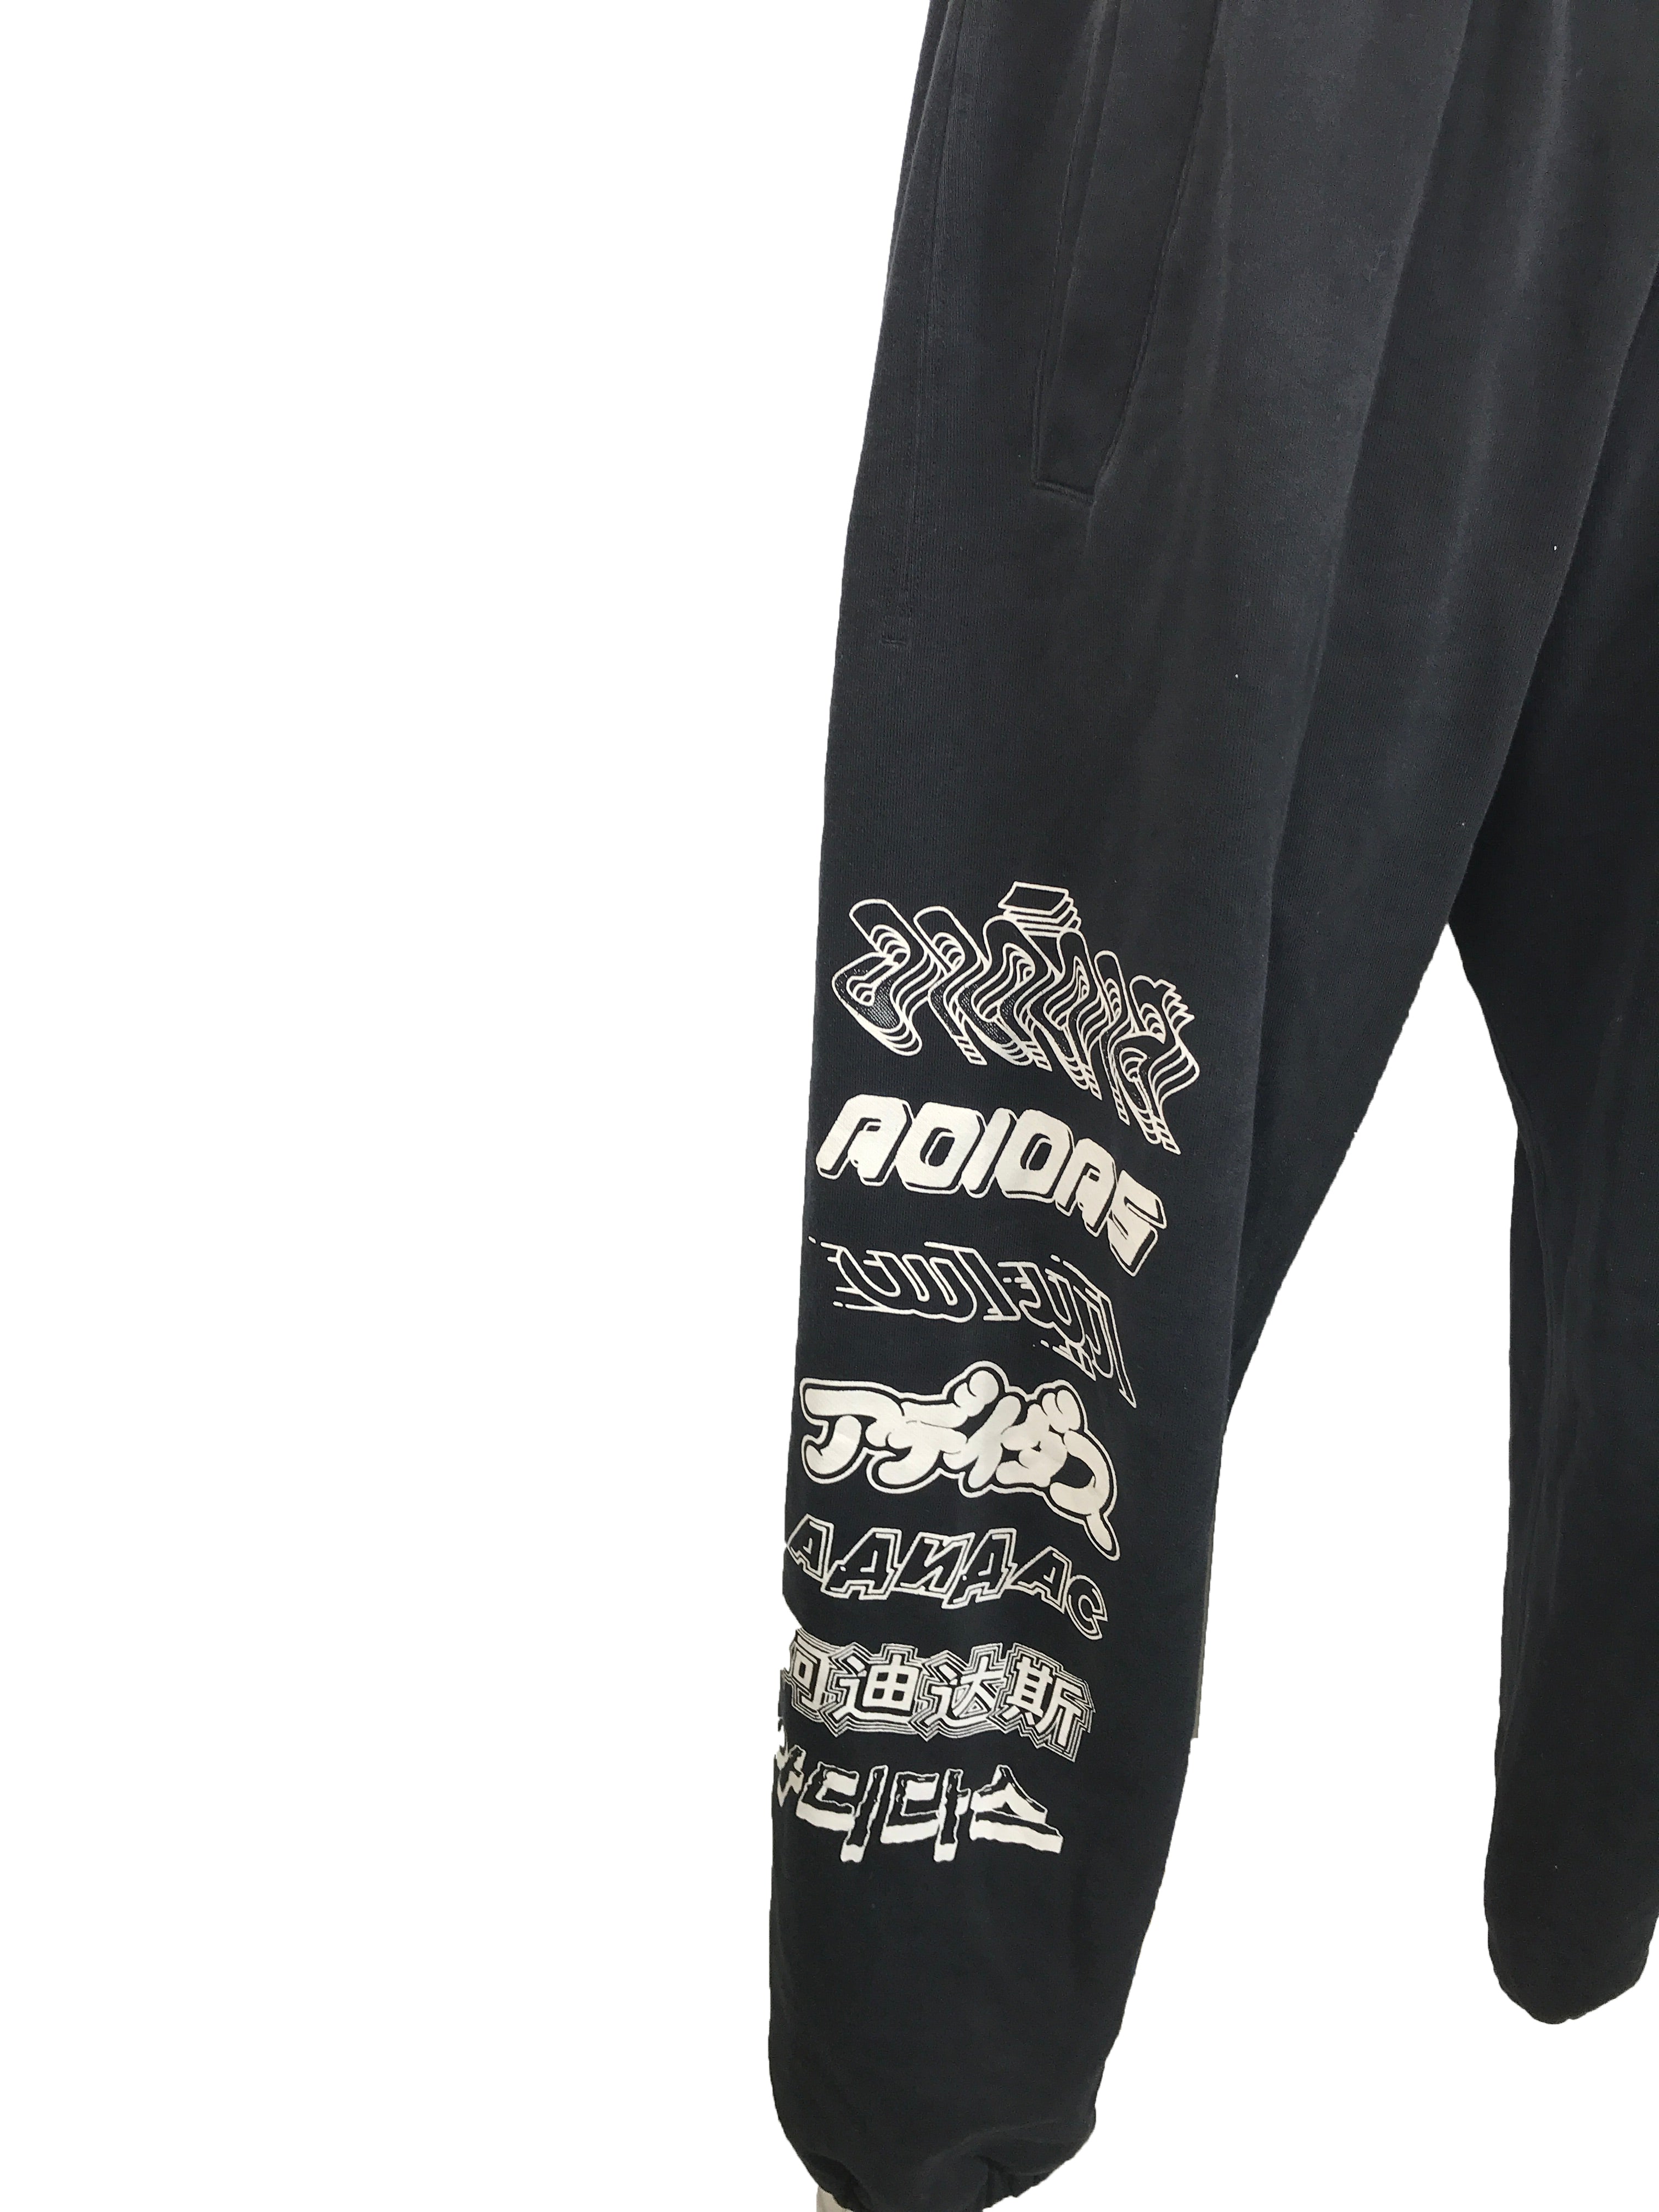 Adidas Black Graphic Sweatpants Men's Size M